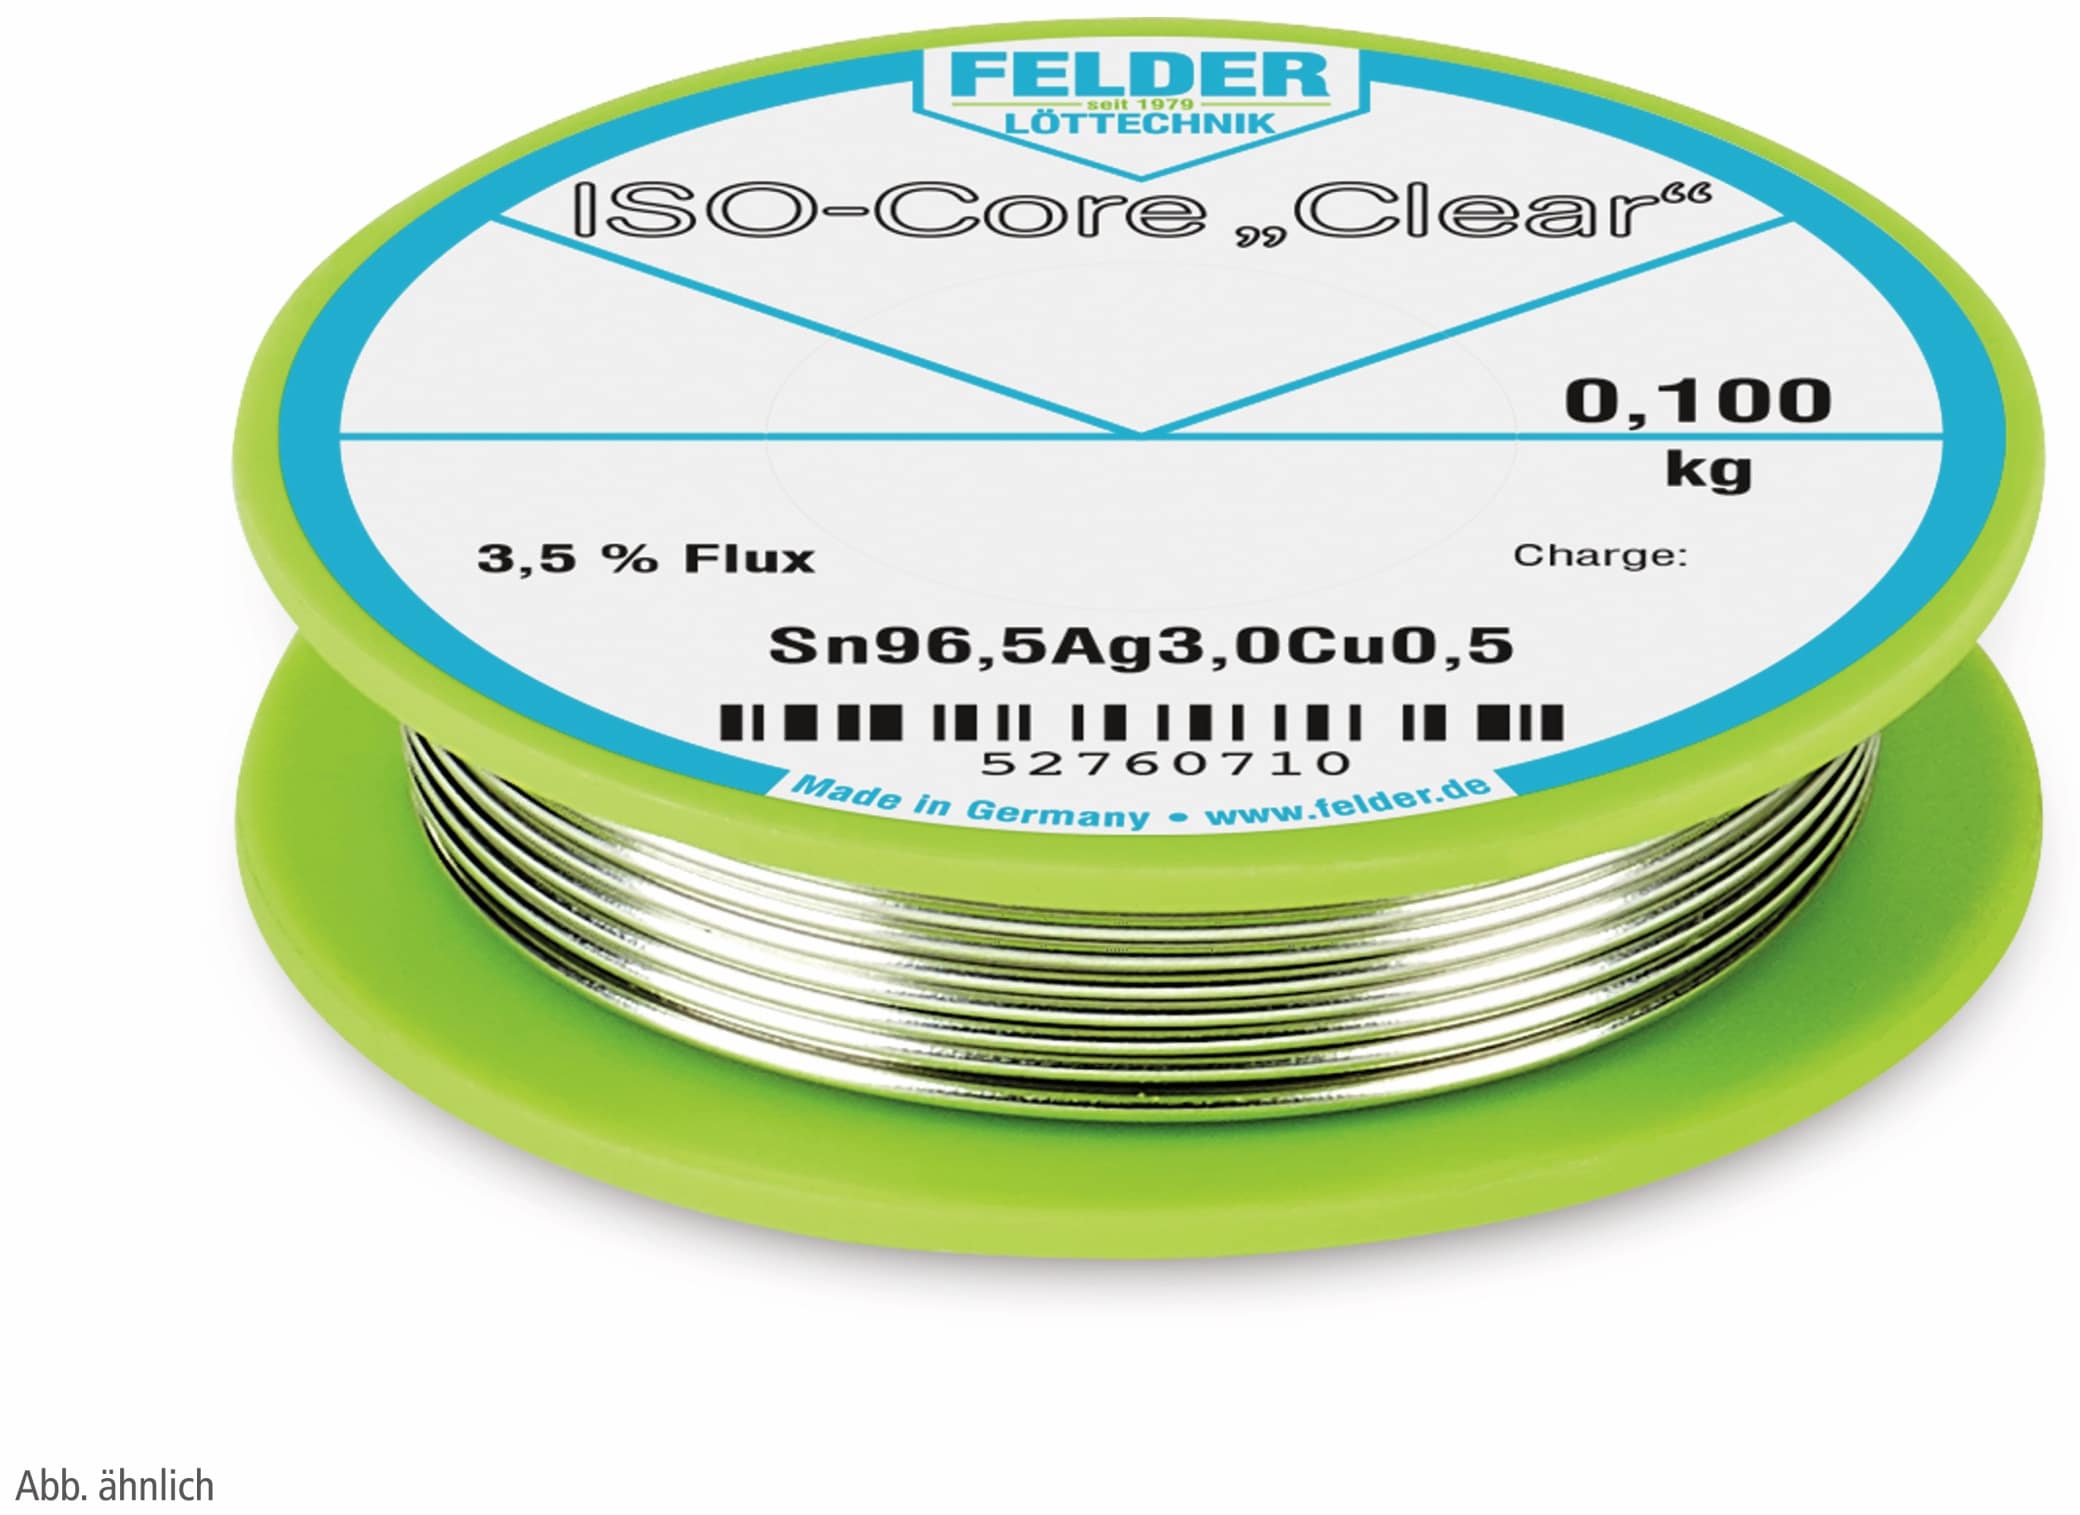 FELDER LÖTTECHNIK Lötdraht ISO-Core "Clear", 0,5 mm, 100 g